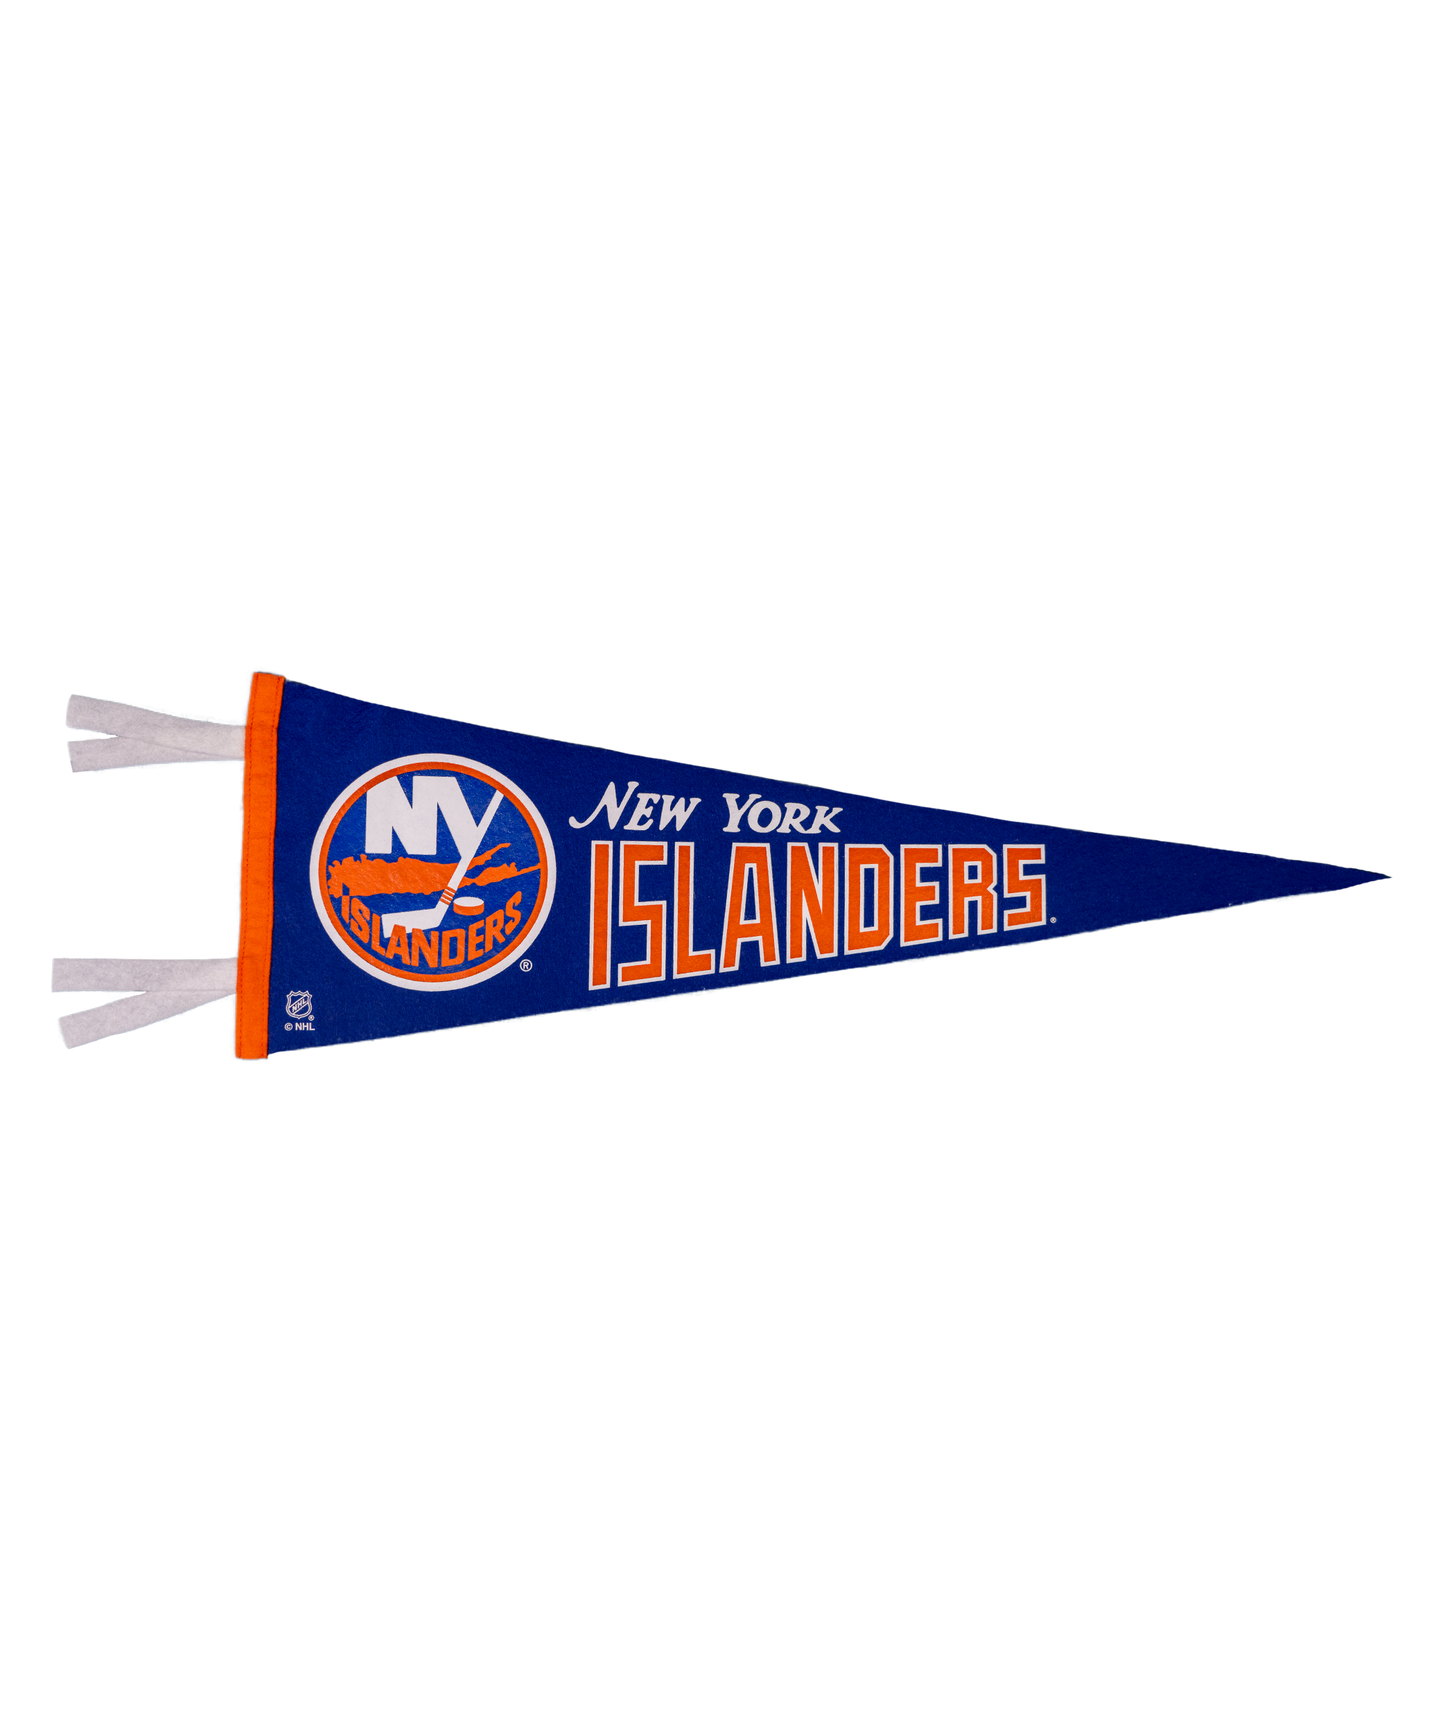 New York Islanders Pennant | NHL x Oxford Pennant